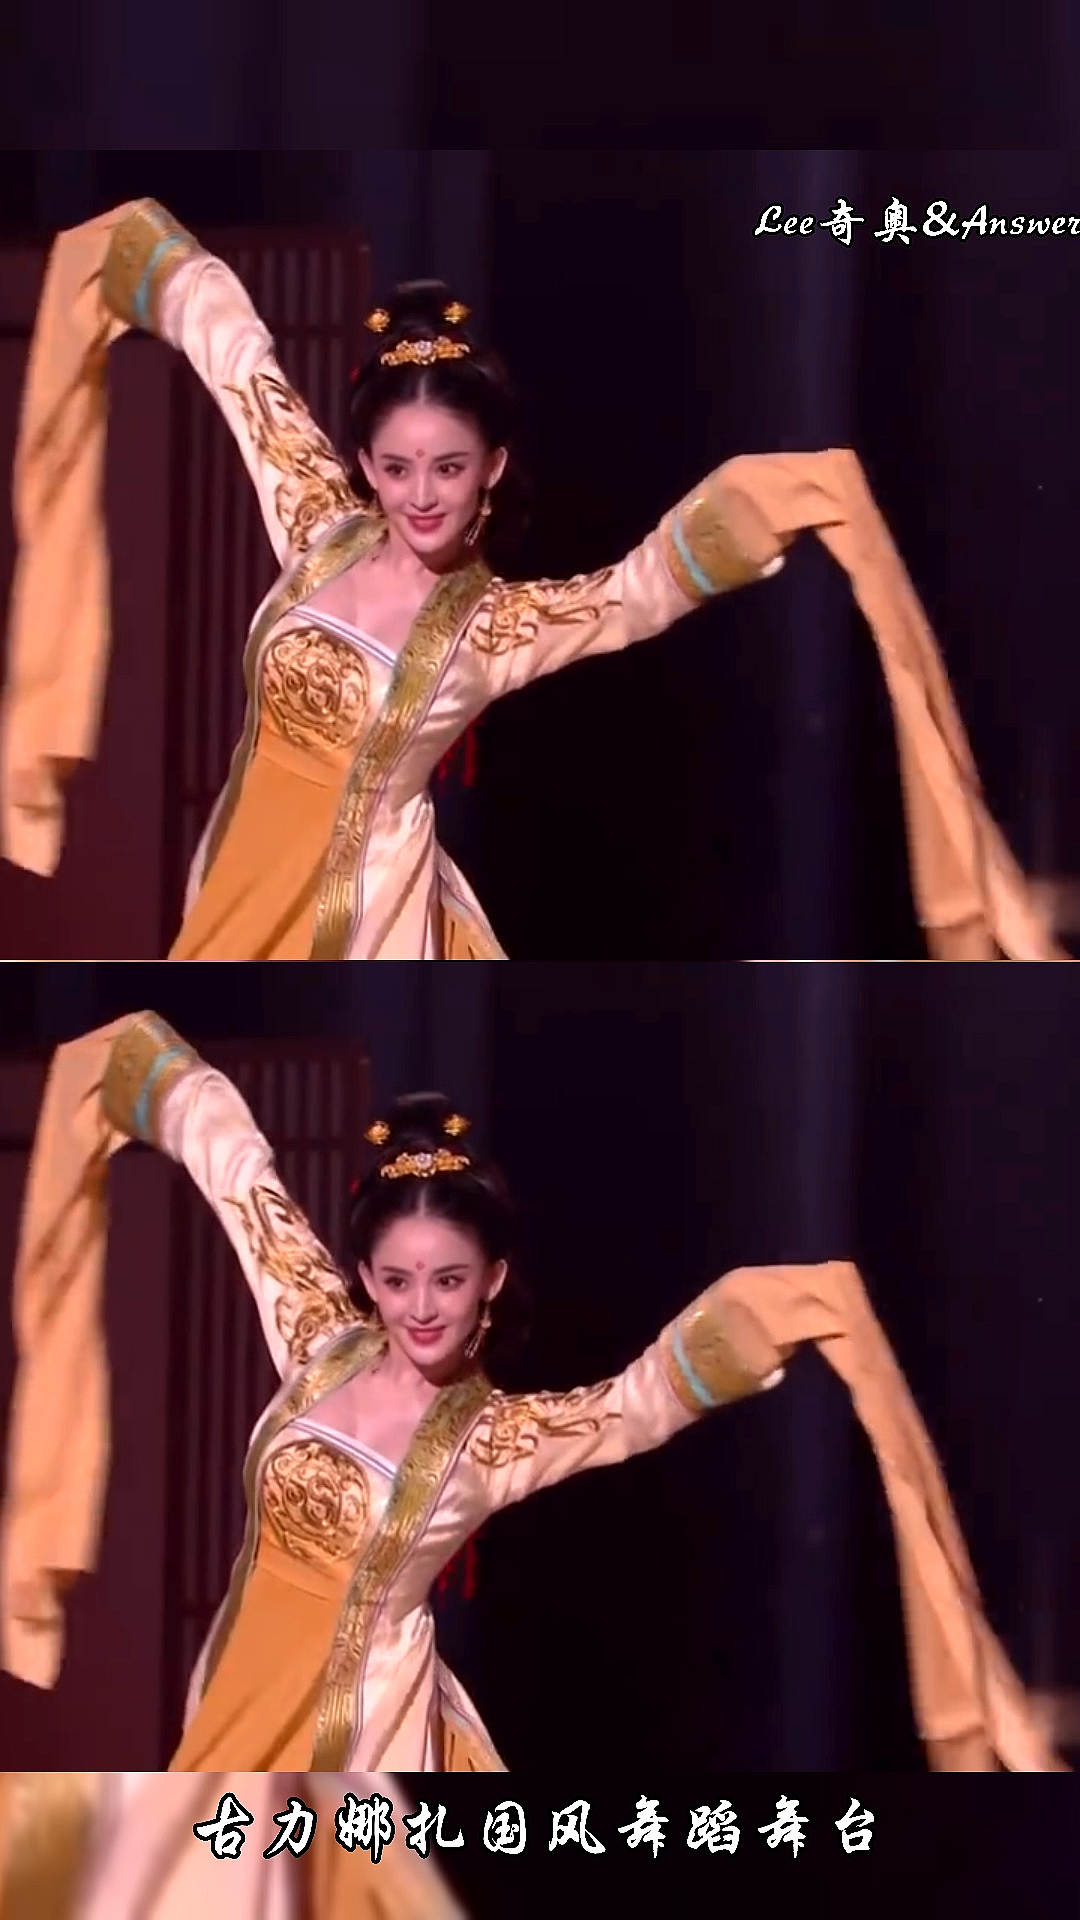 我要上热门古力娜扎国风舞蹈舞台像从画中走出来的美人一样